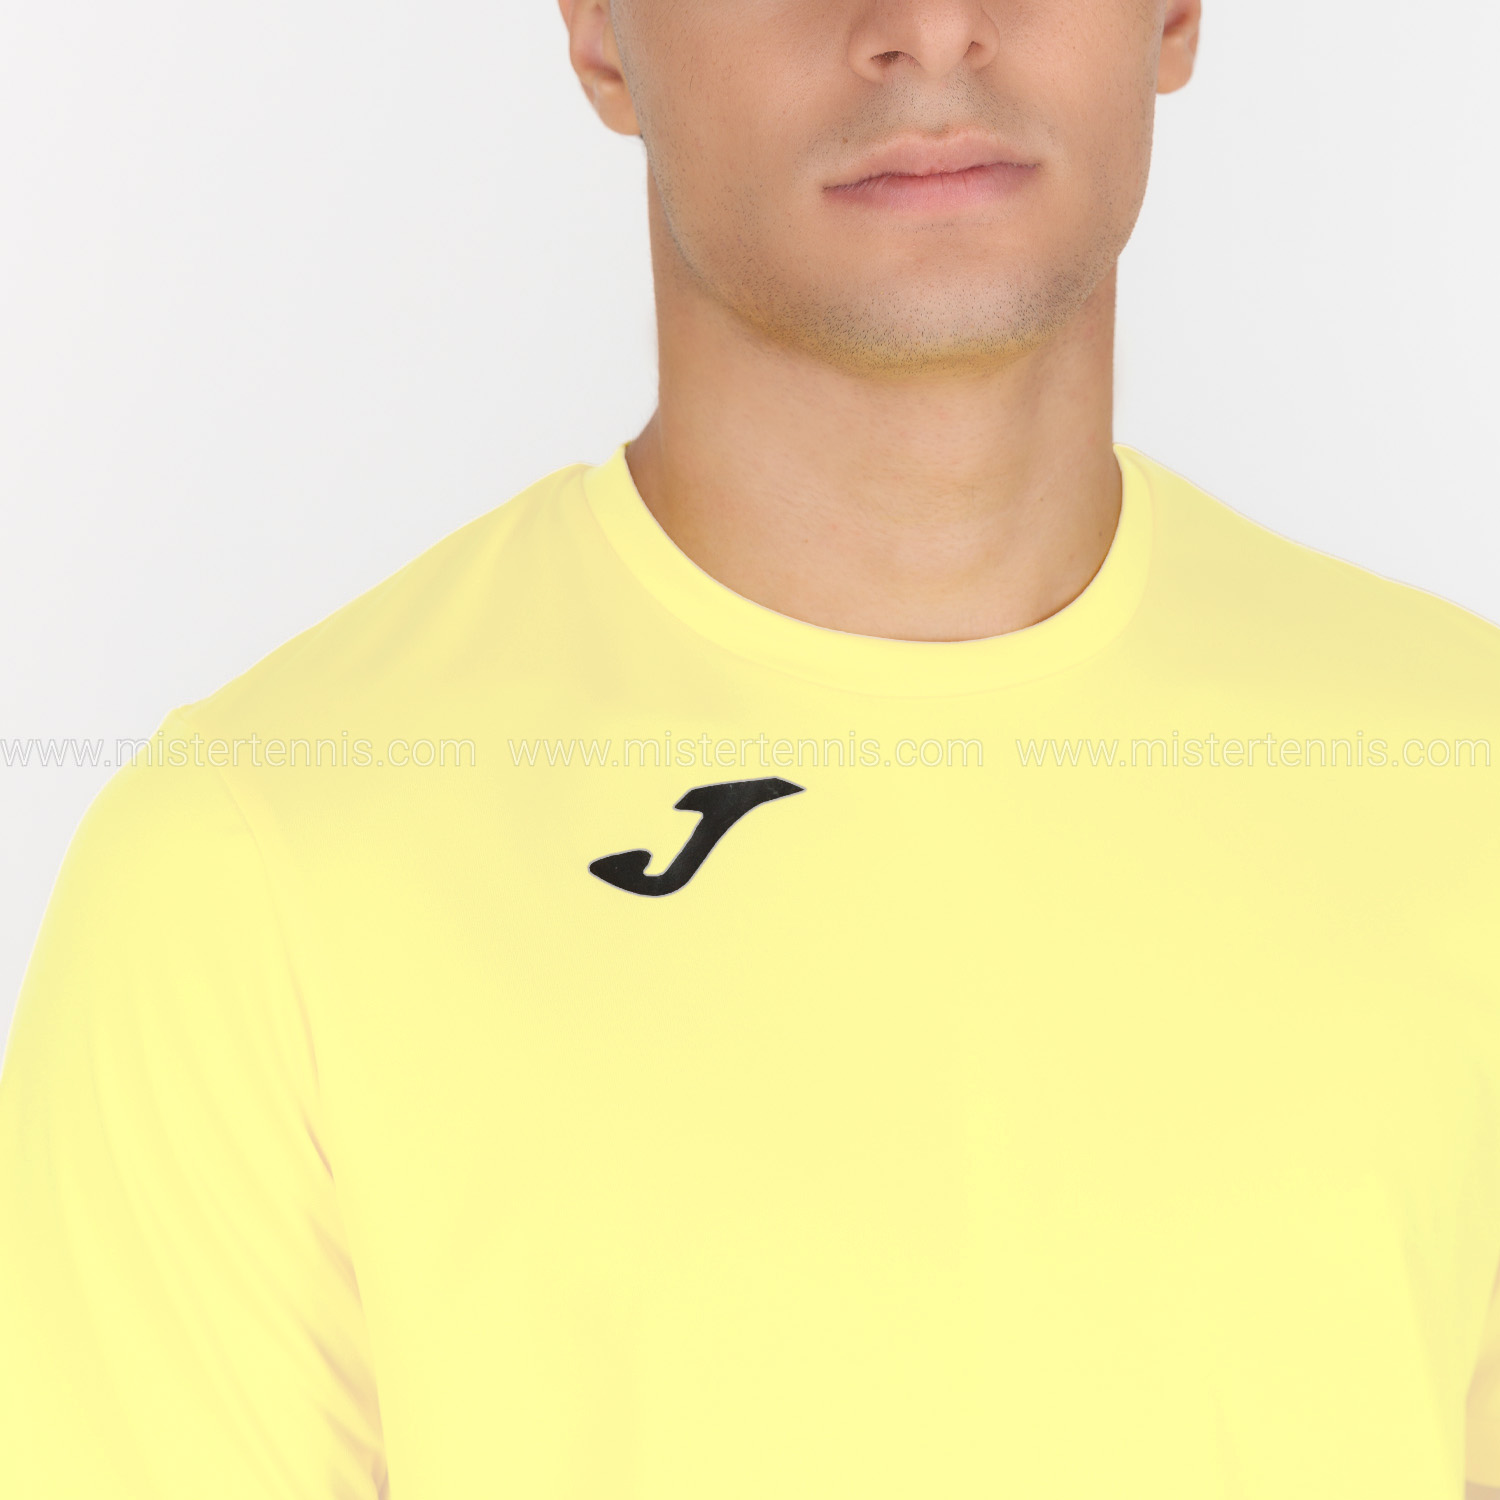 Joma Combi T-Shirt - Yellow